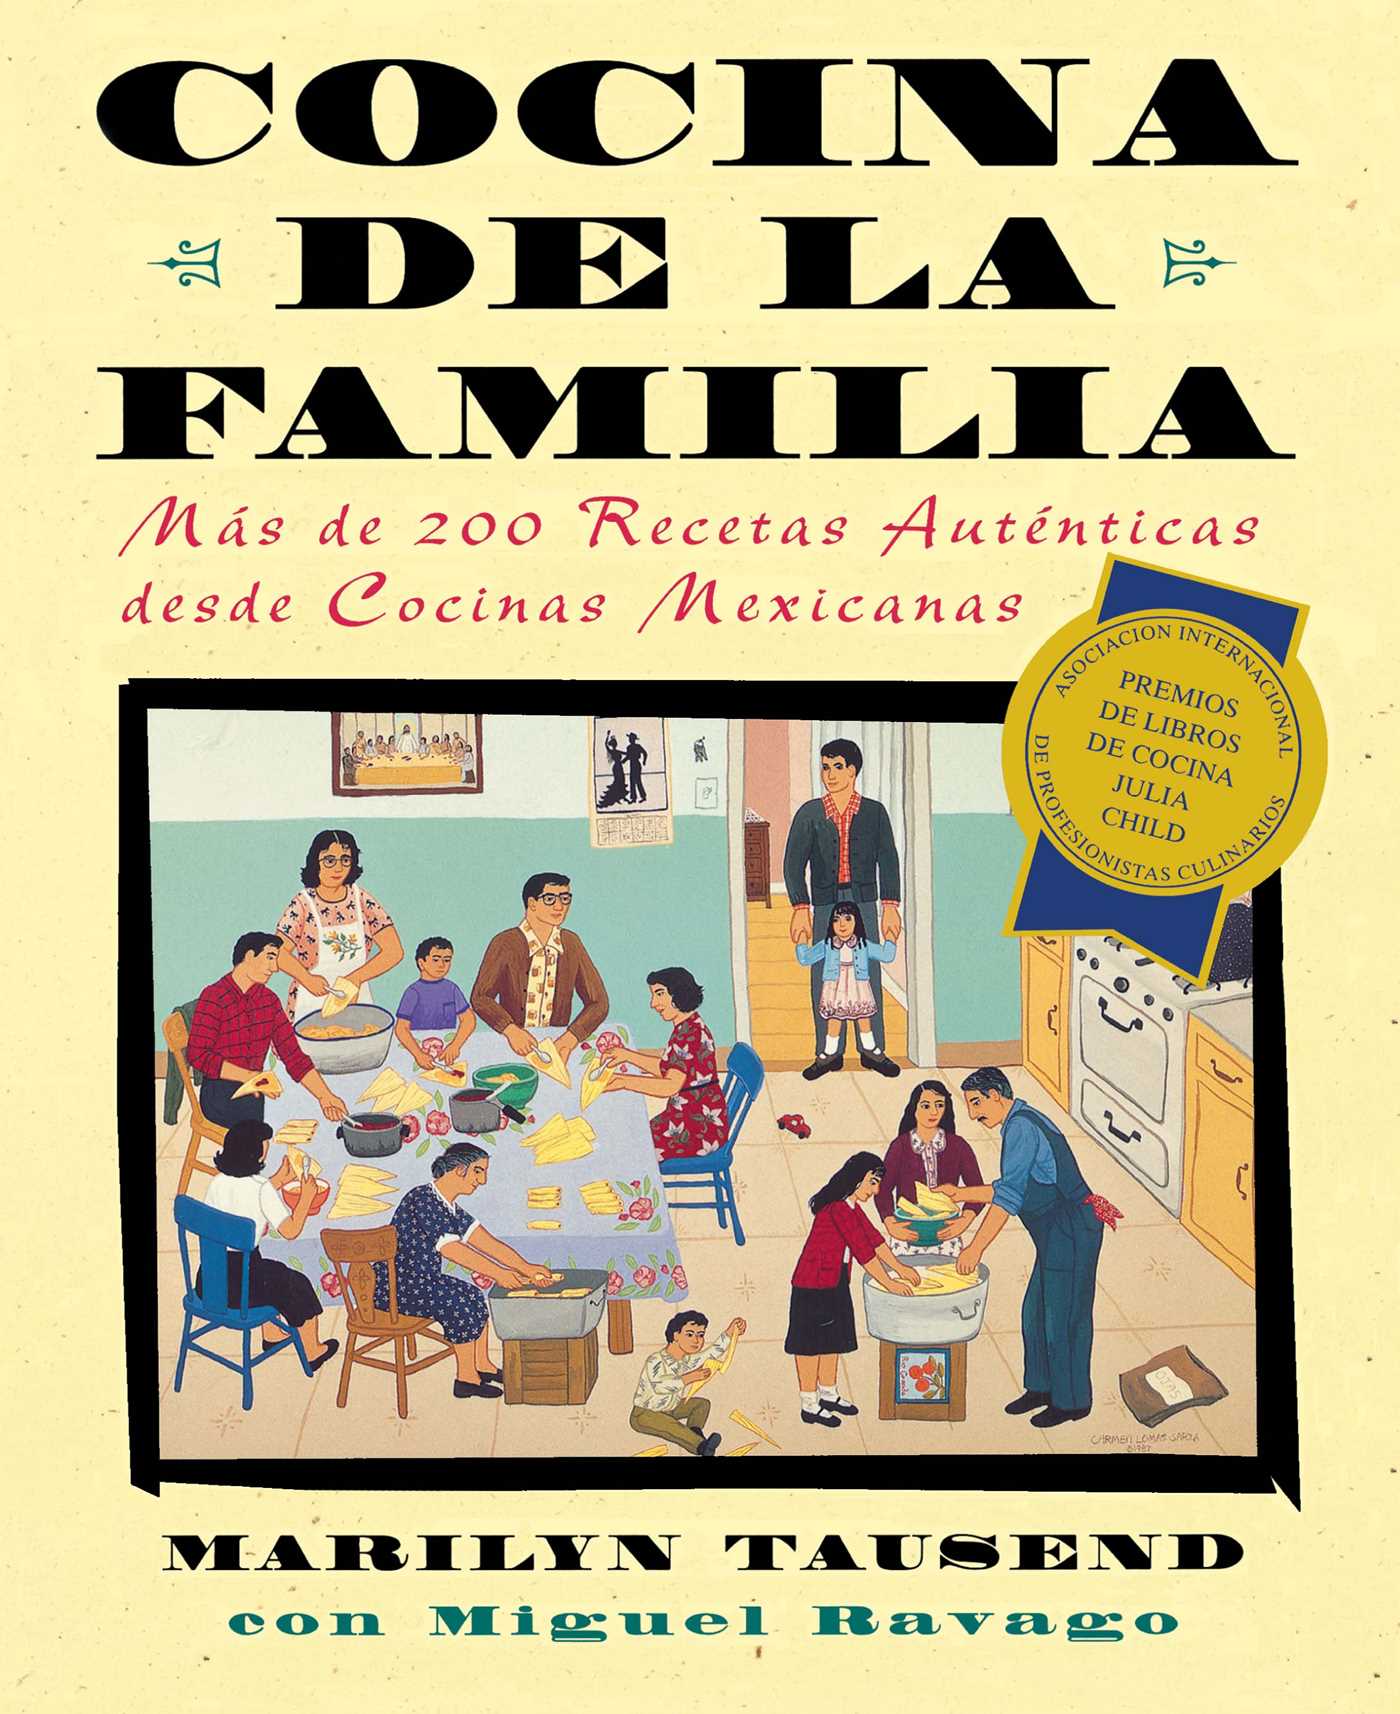 Cocina de la Familia (Family Kitchen) : Mas de 200 Recetas Autenticas de Cocinas Mexicanas